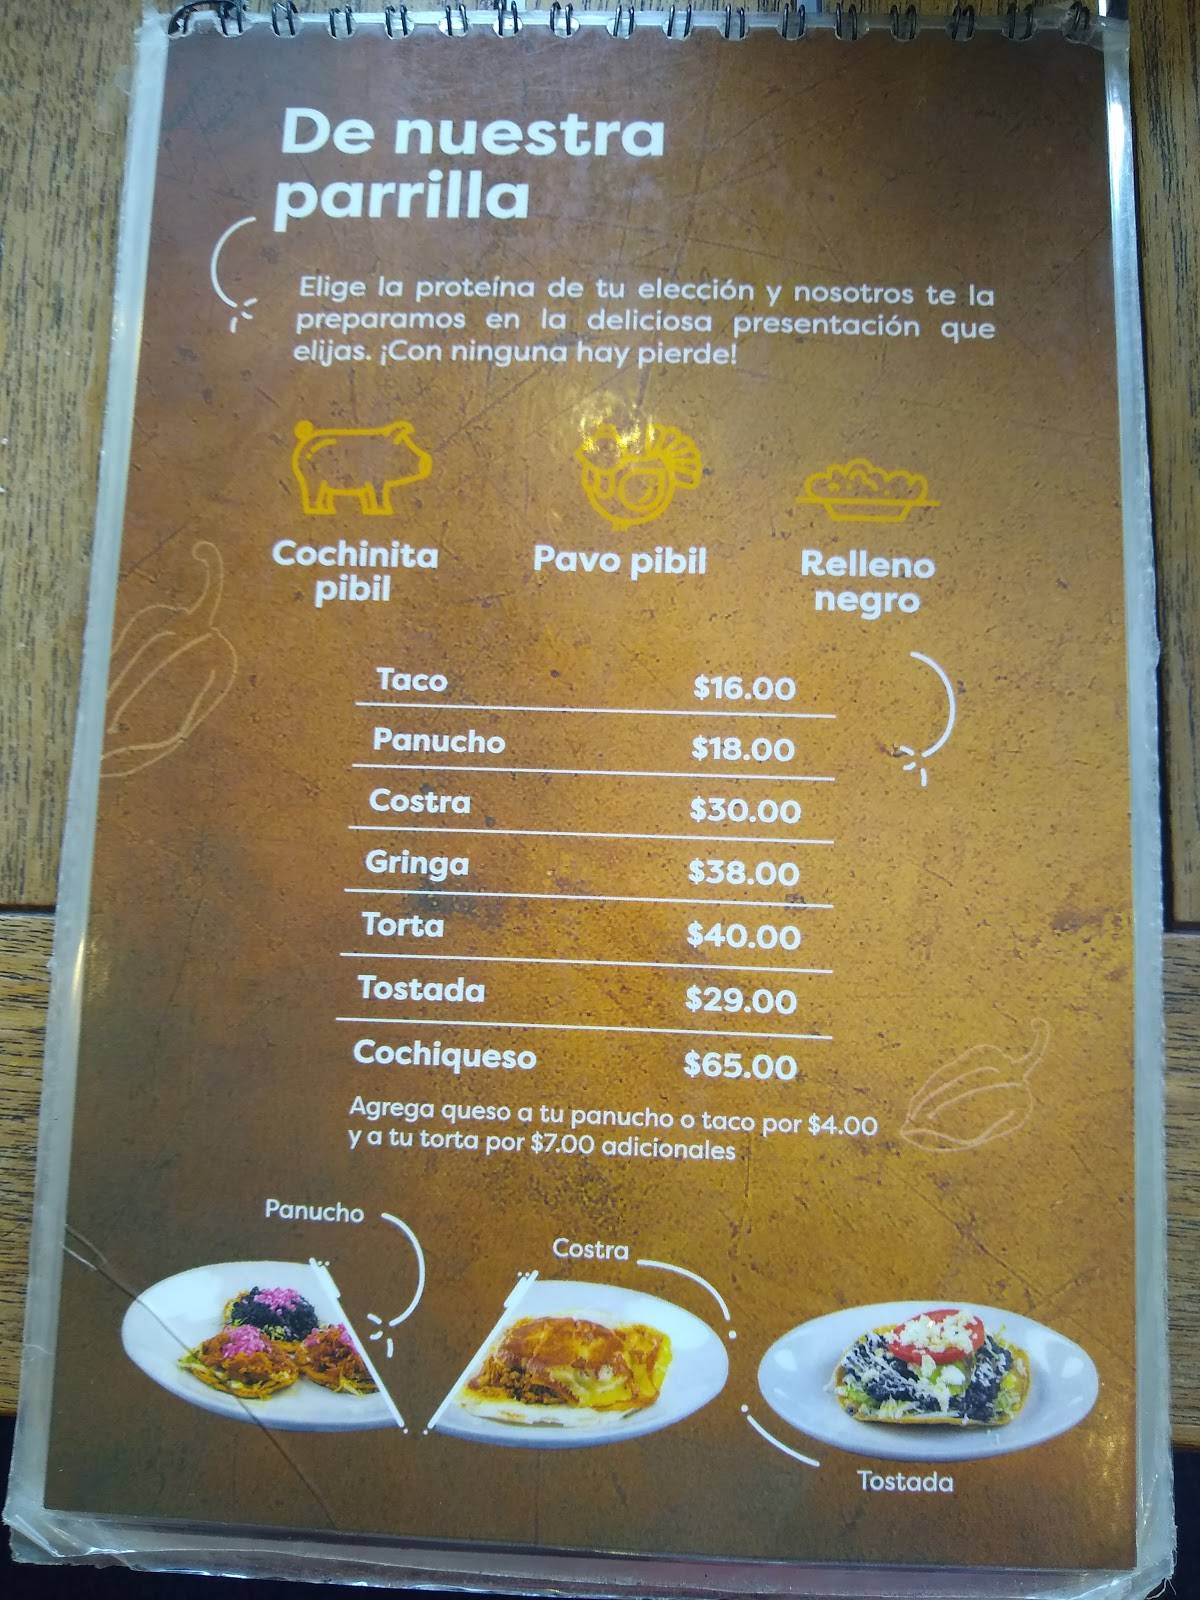 Carta del restaurante Los Picositos - Aguilas, Ciudad del México, Calz del  los Leones 285